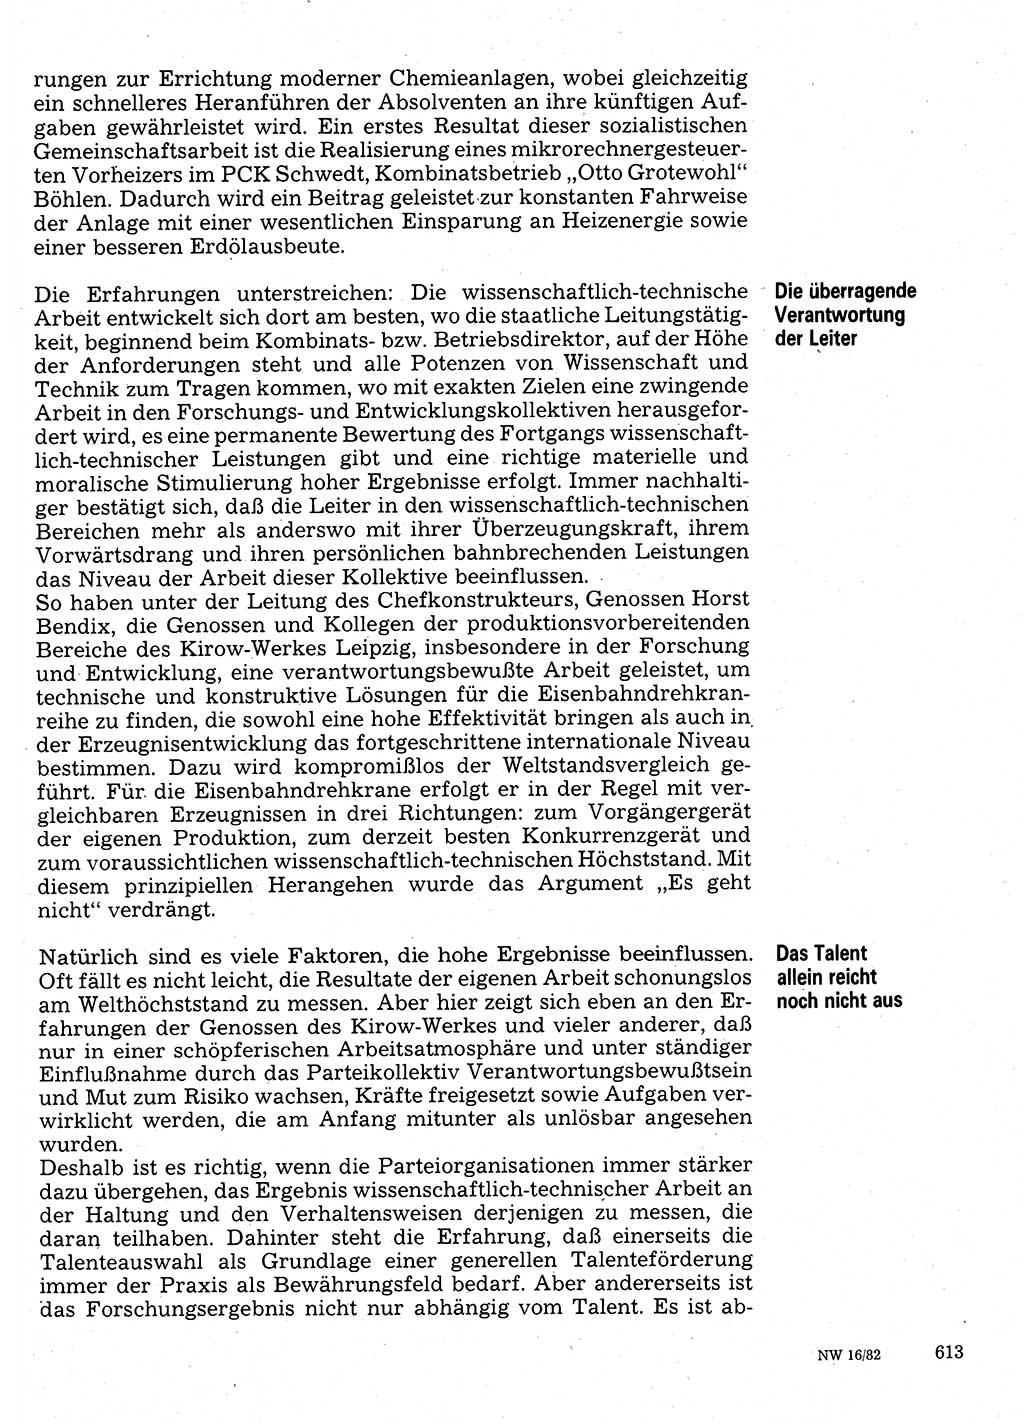 Neuer Weg (NW), Organ des Zentralkomitees (ZK) der SED (Sozialistische Einheitspartei Deutschlands) für Fragen des Parteilebens, 37. Jahrgang [Deutsche Demokratische Republik (DDR)] 1982, Seite 613 (NW ZK SED DDR 1982, S. 613)